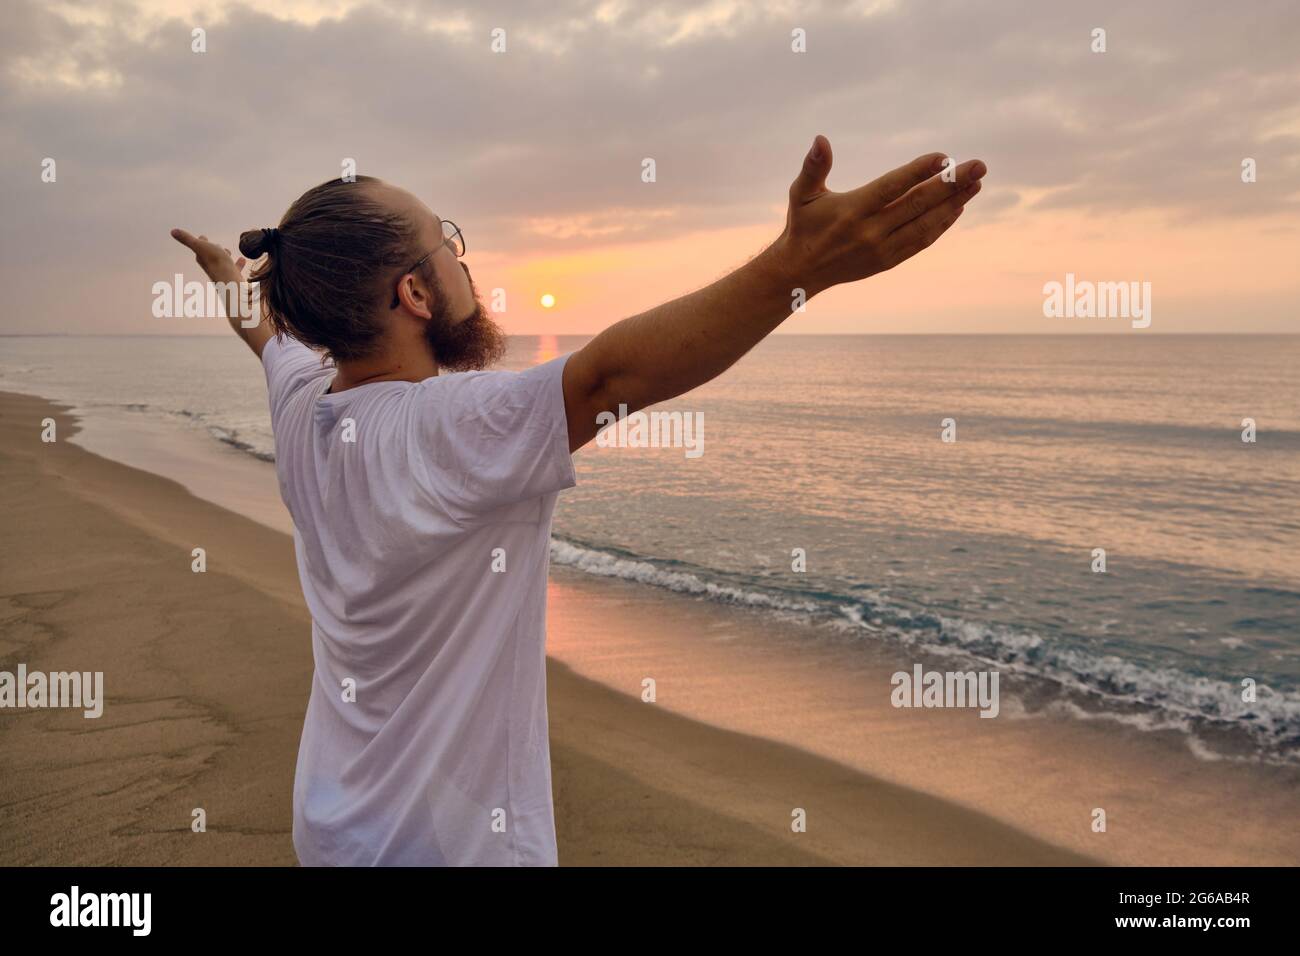 man practices surya namaskar pose at sea beach 2G6AB4R